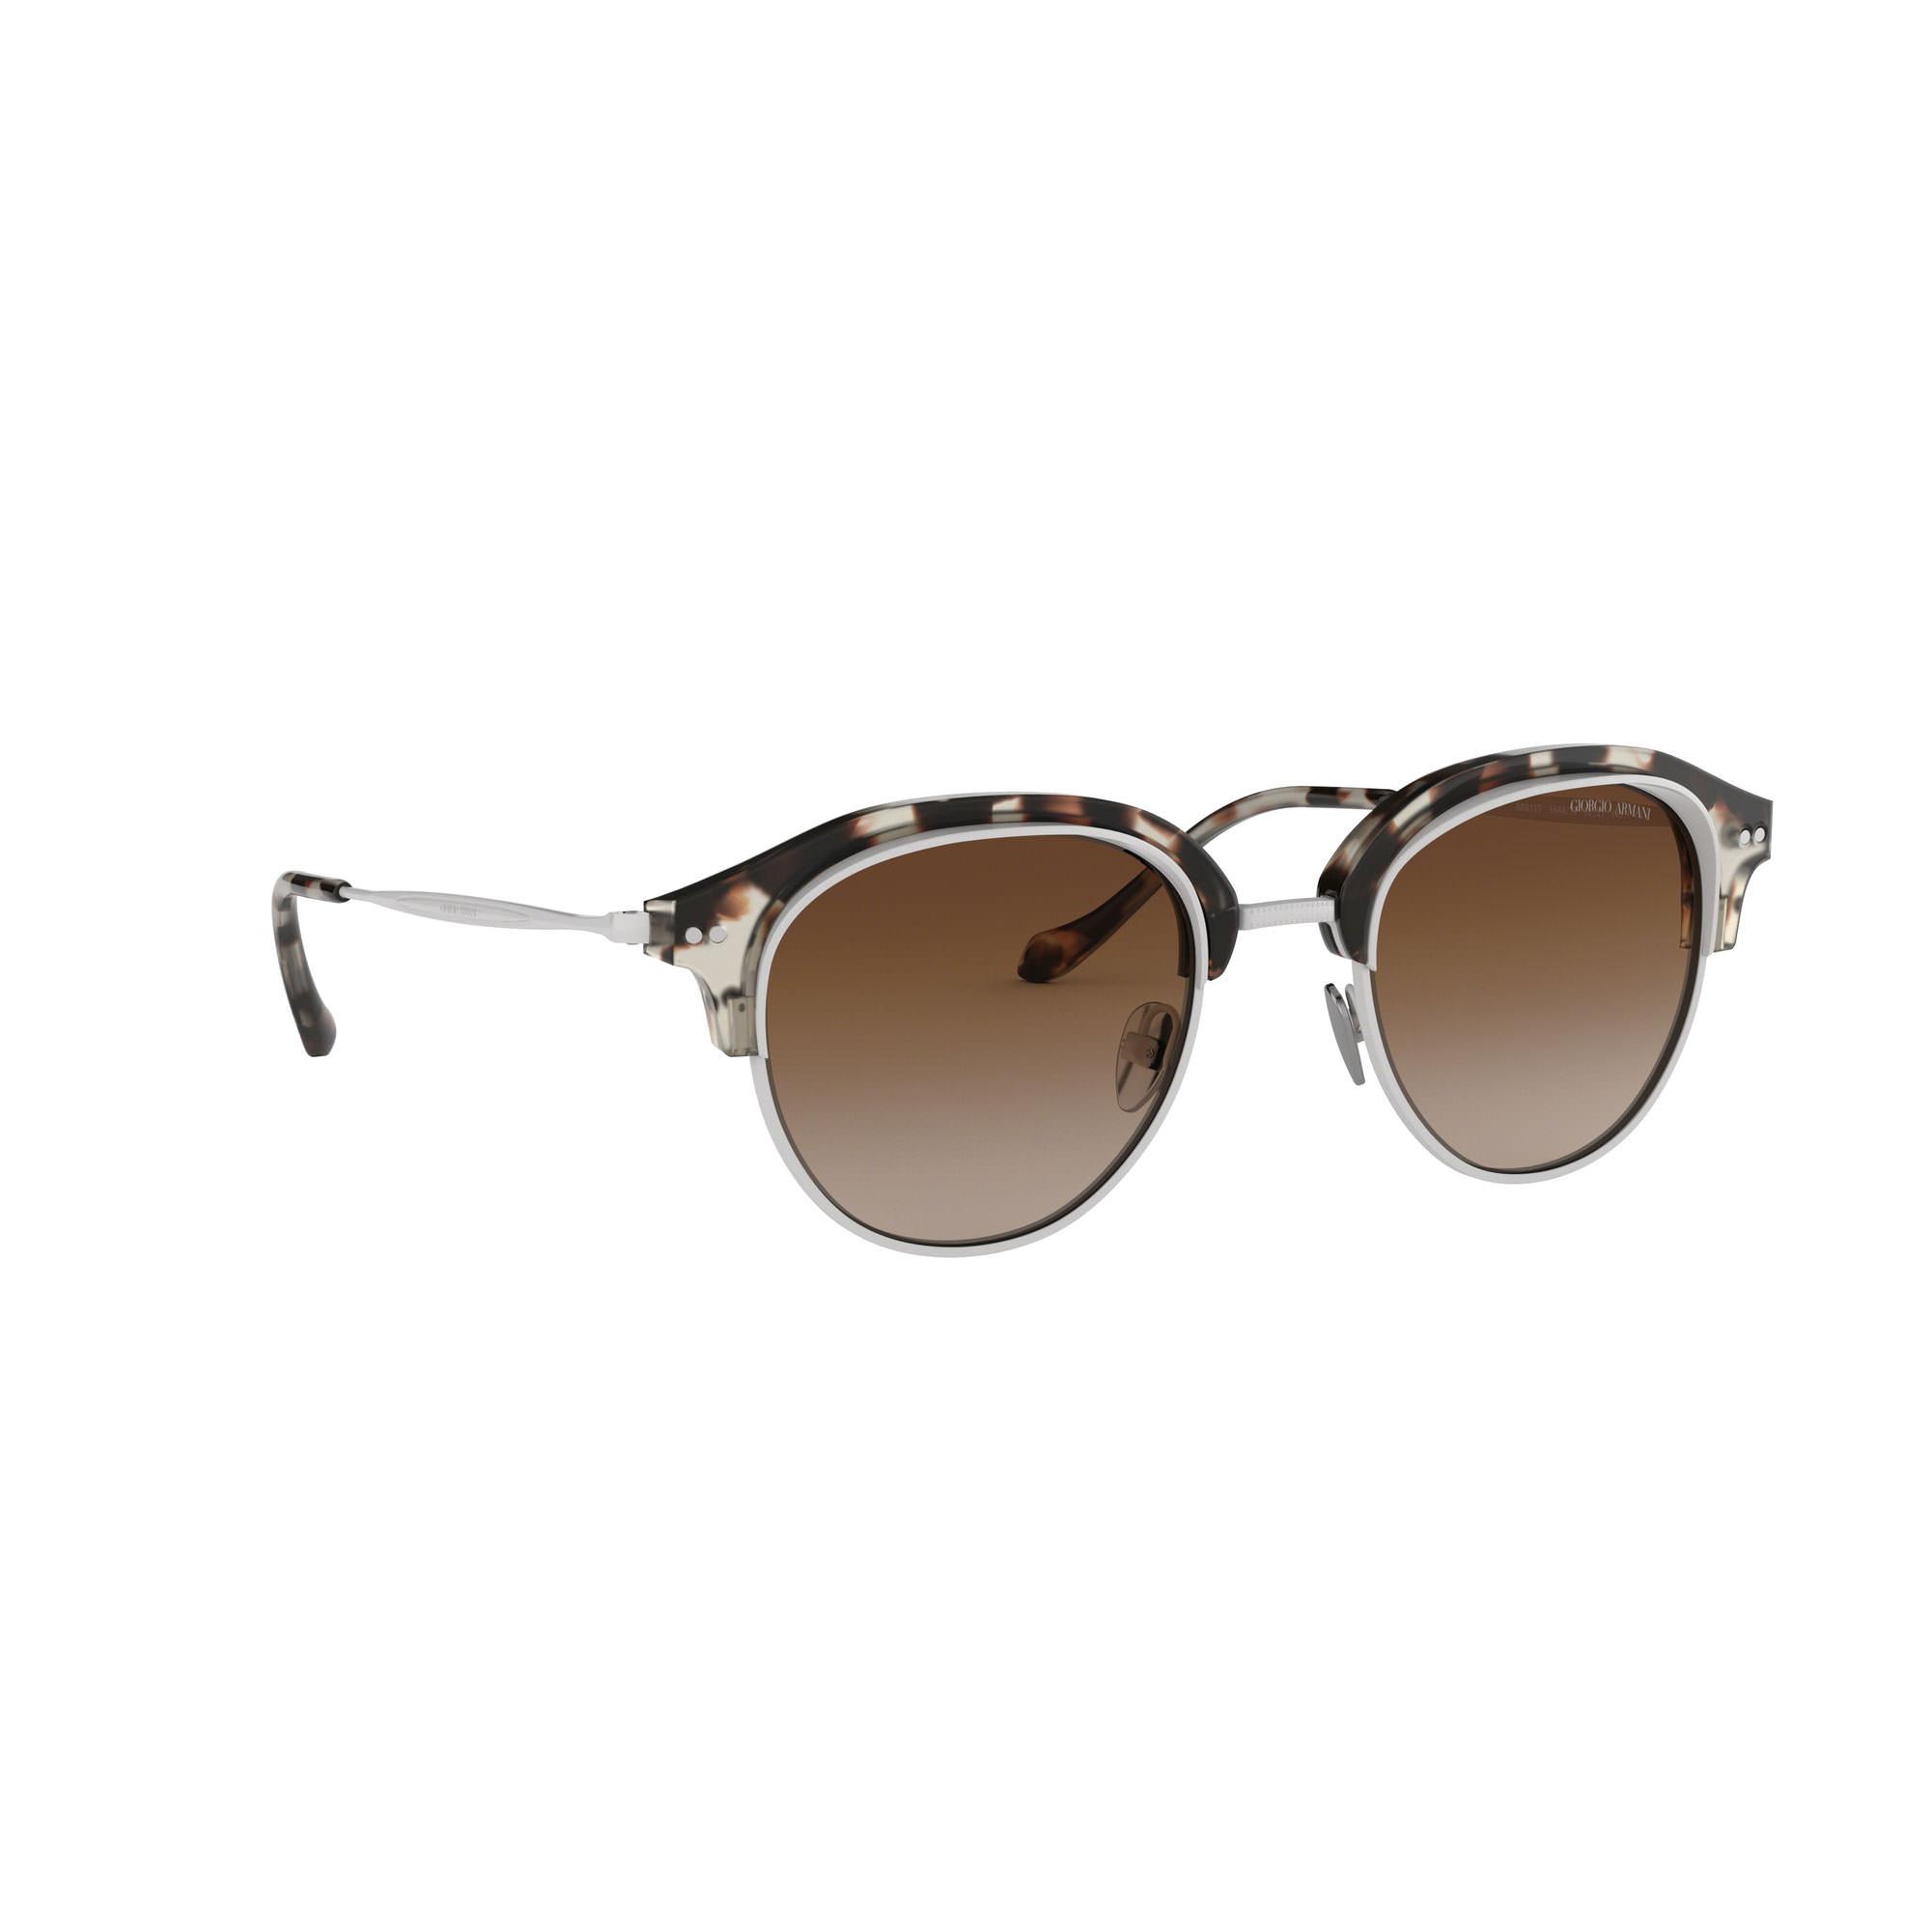 OAR8007 Phantos Sunglasses